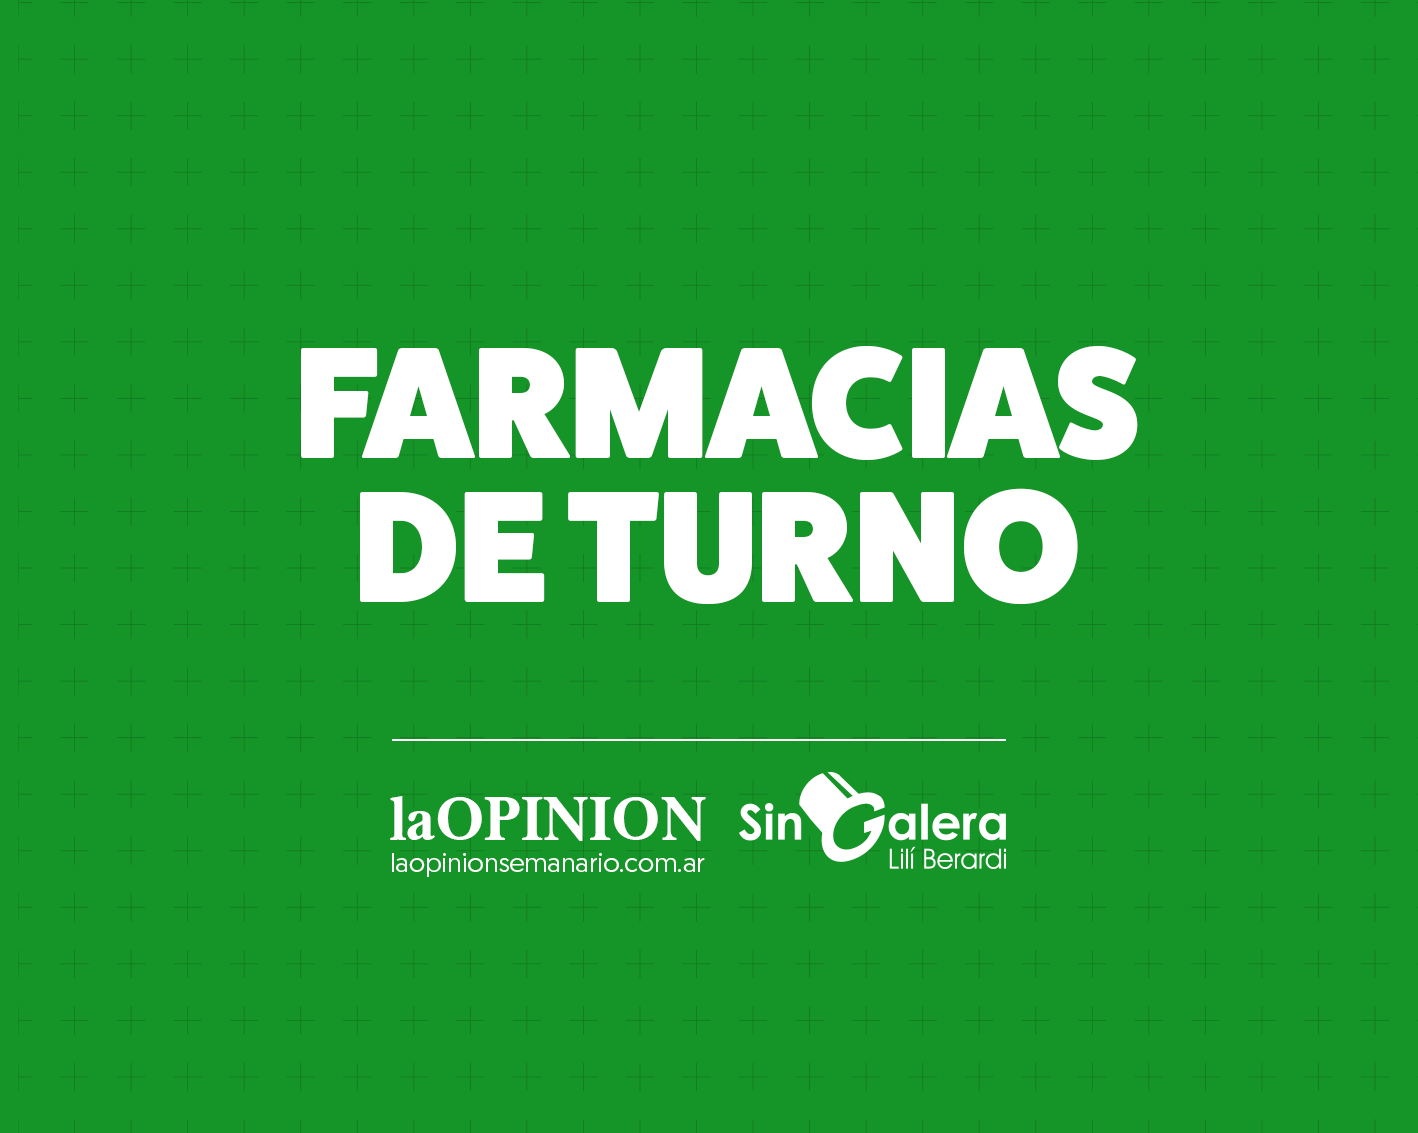 Farmacias de turno 19/12: Allegrone, Marzorati y Otero